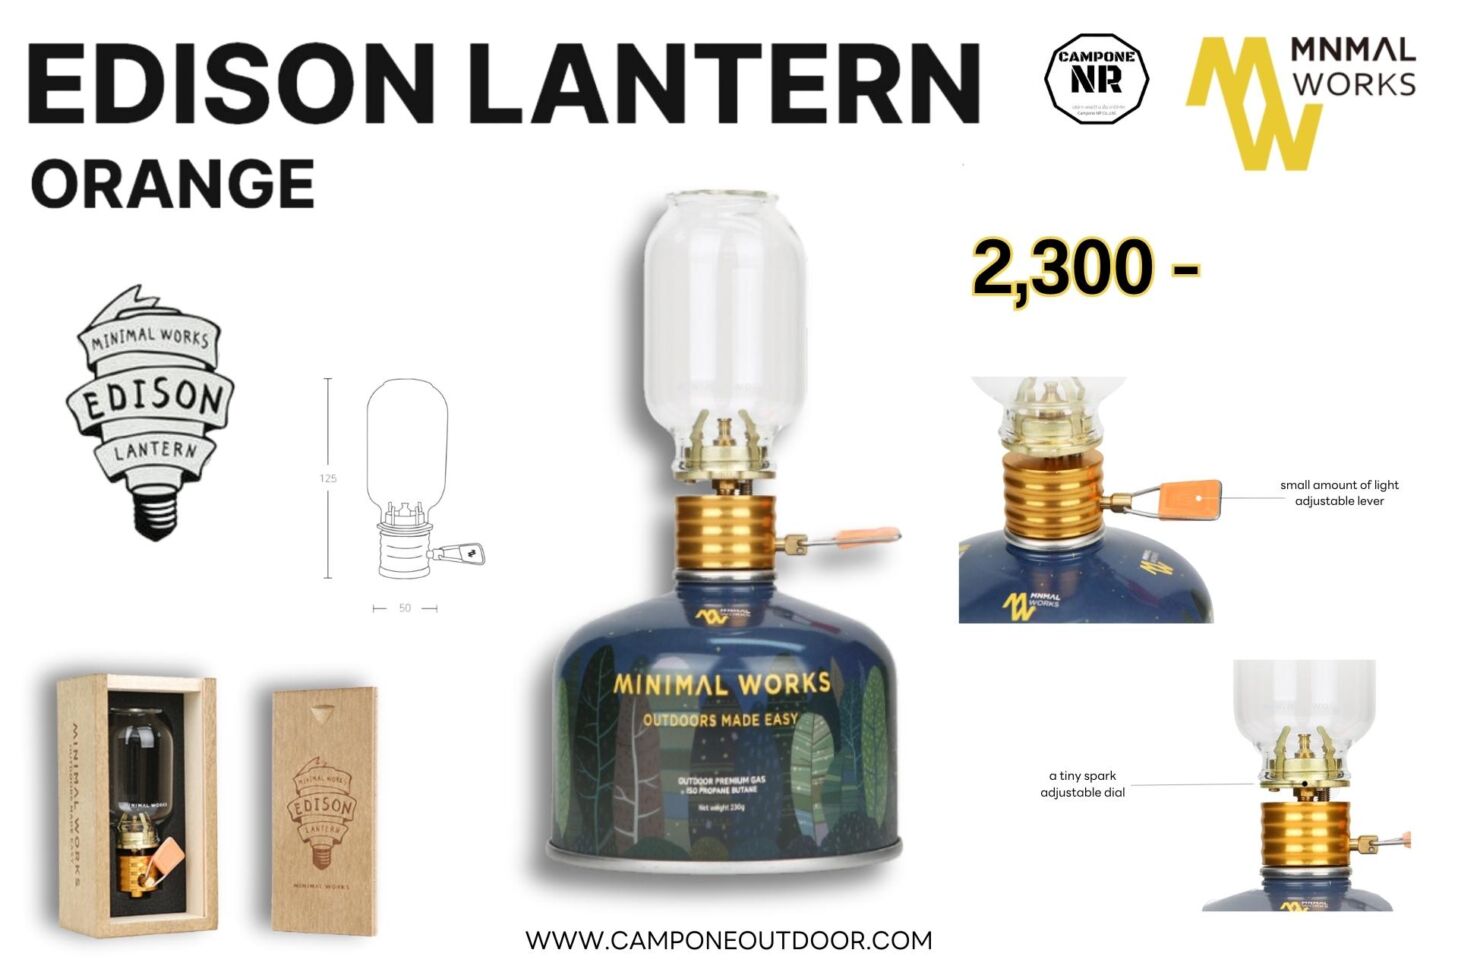 Minimal works Edison Lantern